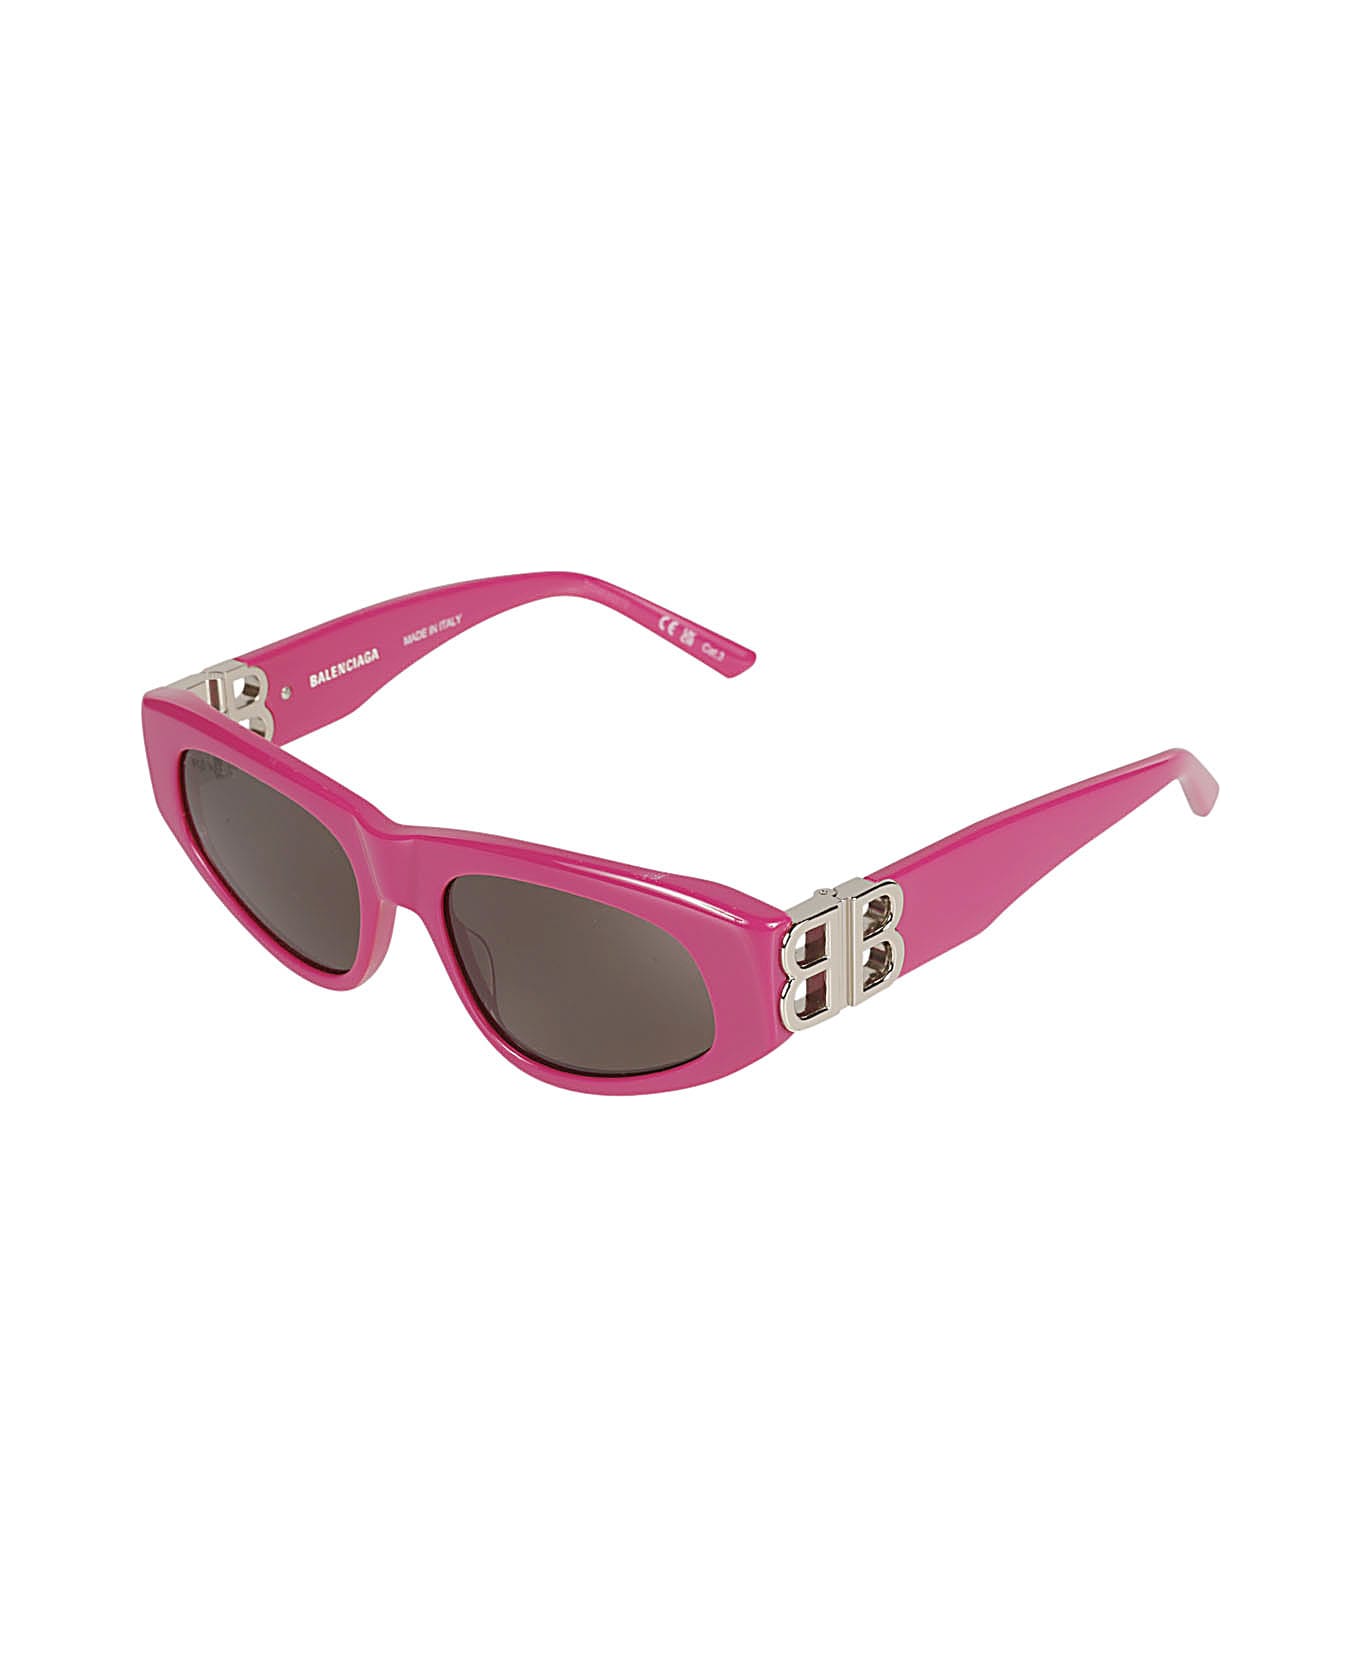 Balenciaga Eyewear Bb Hinge Logo Sided Sunglasses - Fuchsia/Silver/Grey